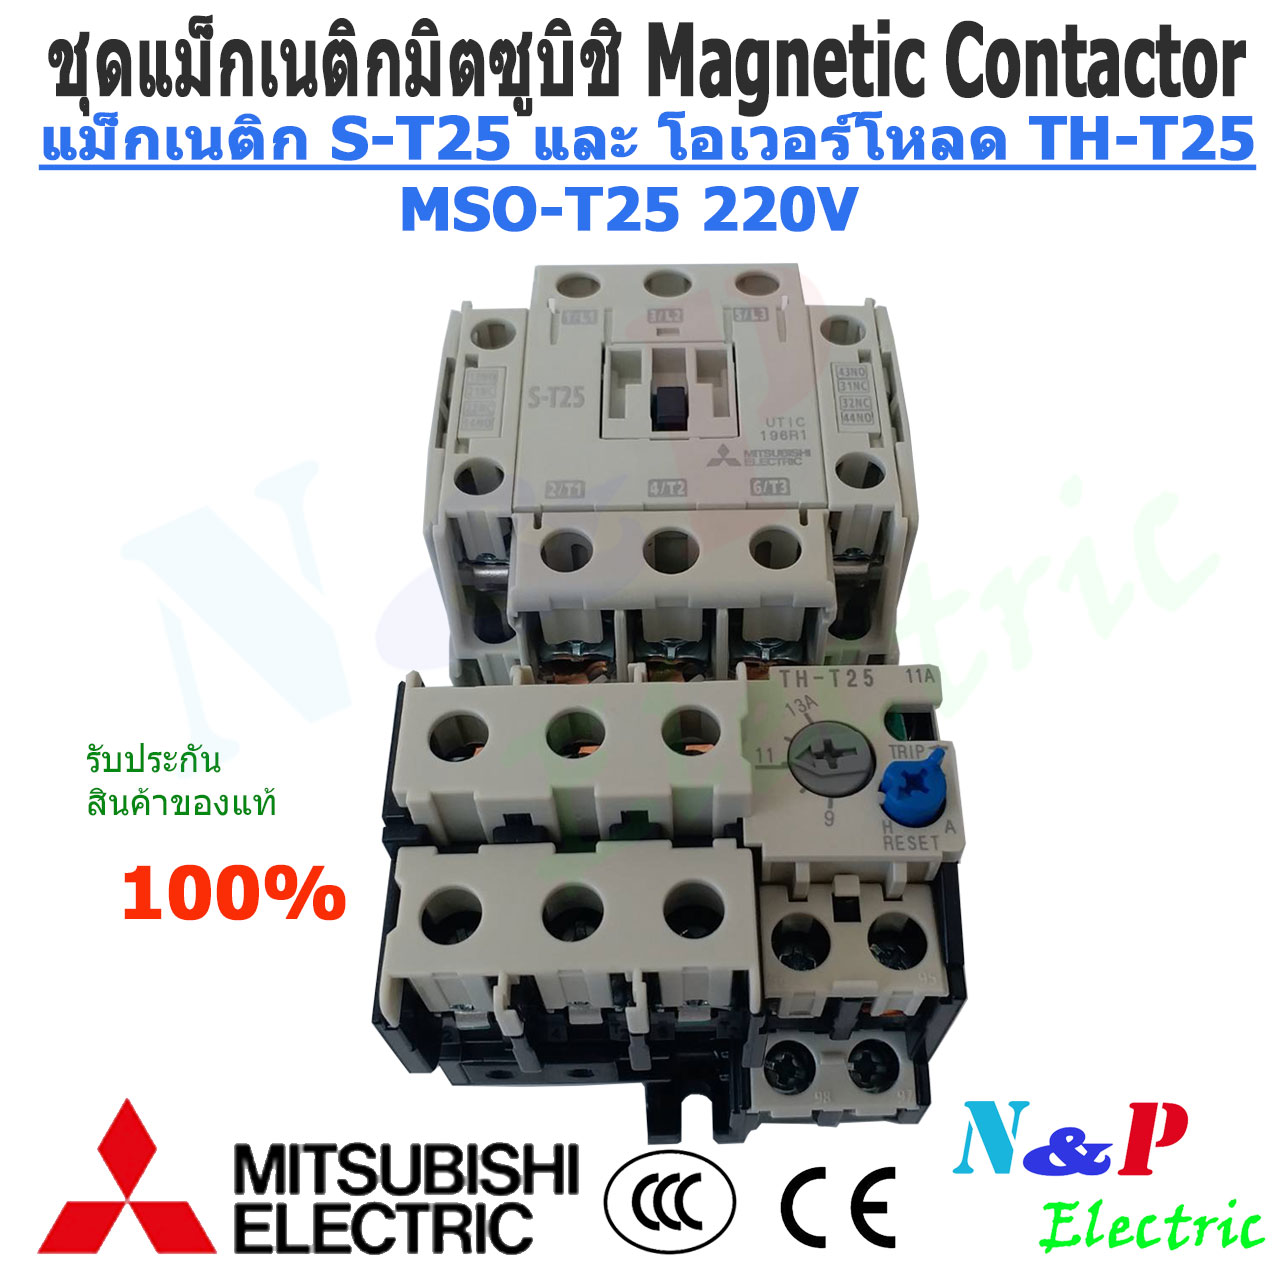 แม็กเนติก ชุดแม็กเนติก พร้อมโอเวอร์โหลด มิตซูบิชิ MITSUBISHI Magnetic Contactor+OVERLOAD RELAY MSO-T25 220V-380V5A-22A